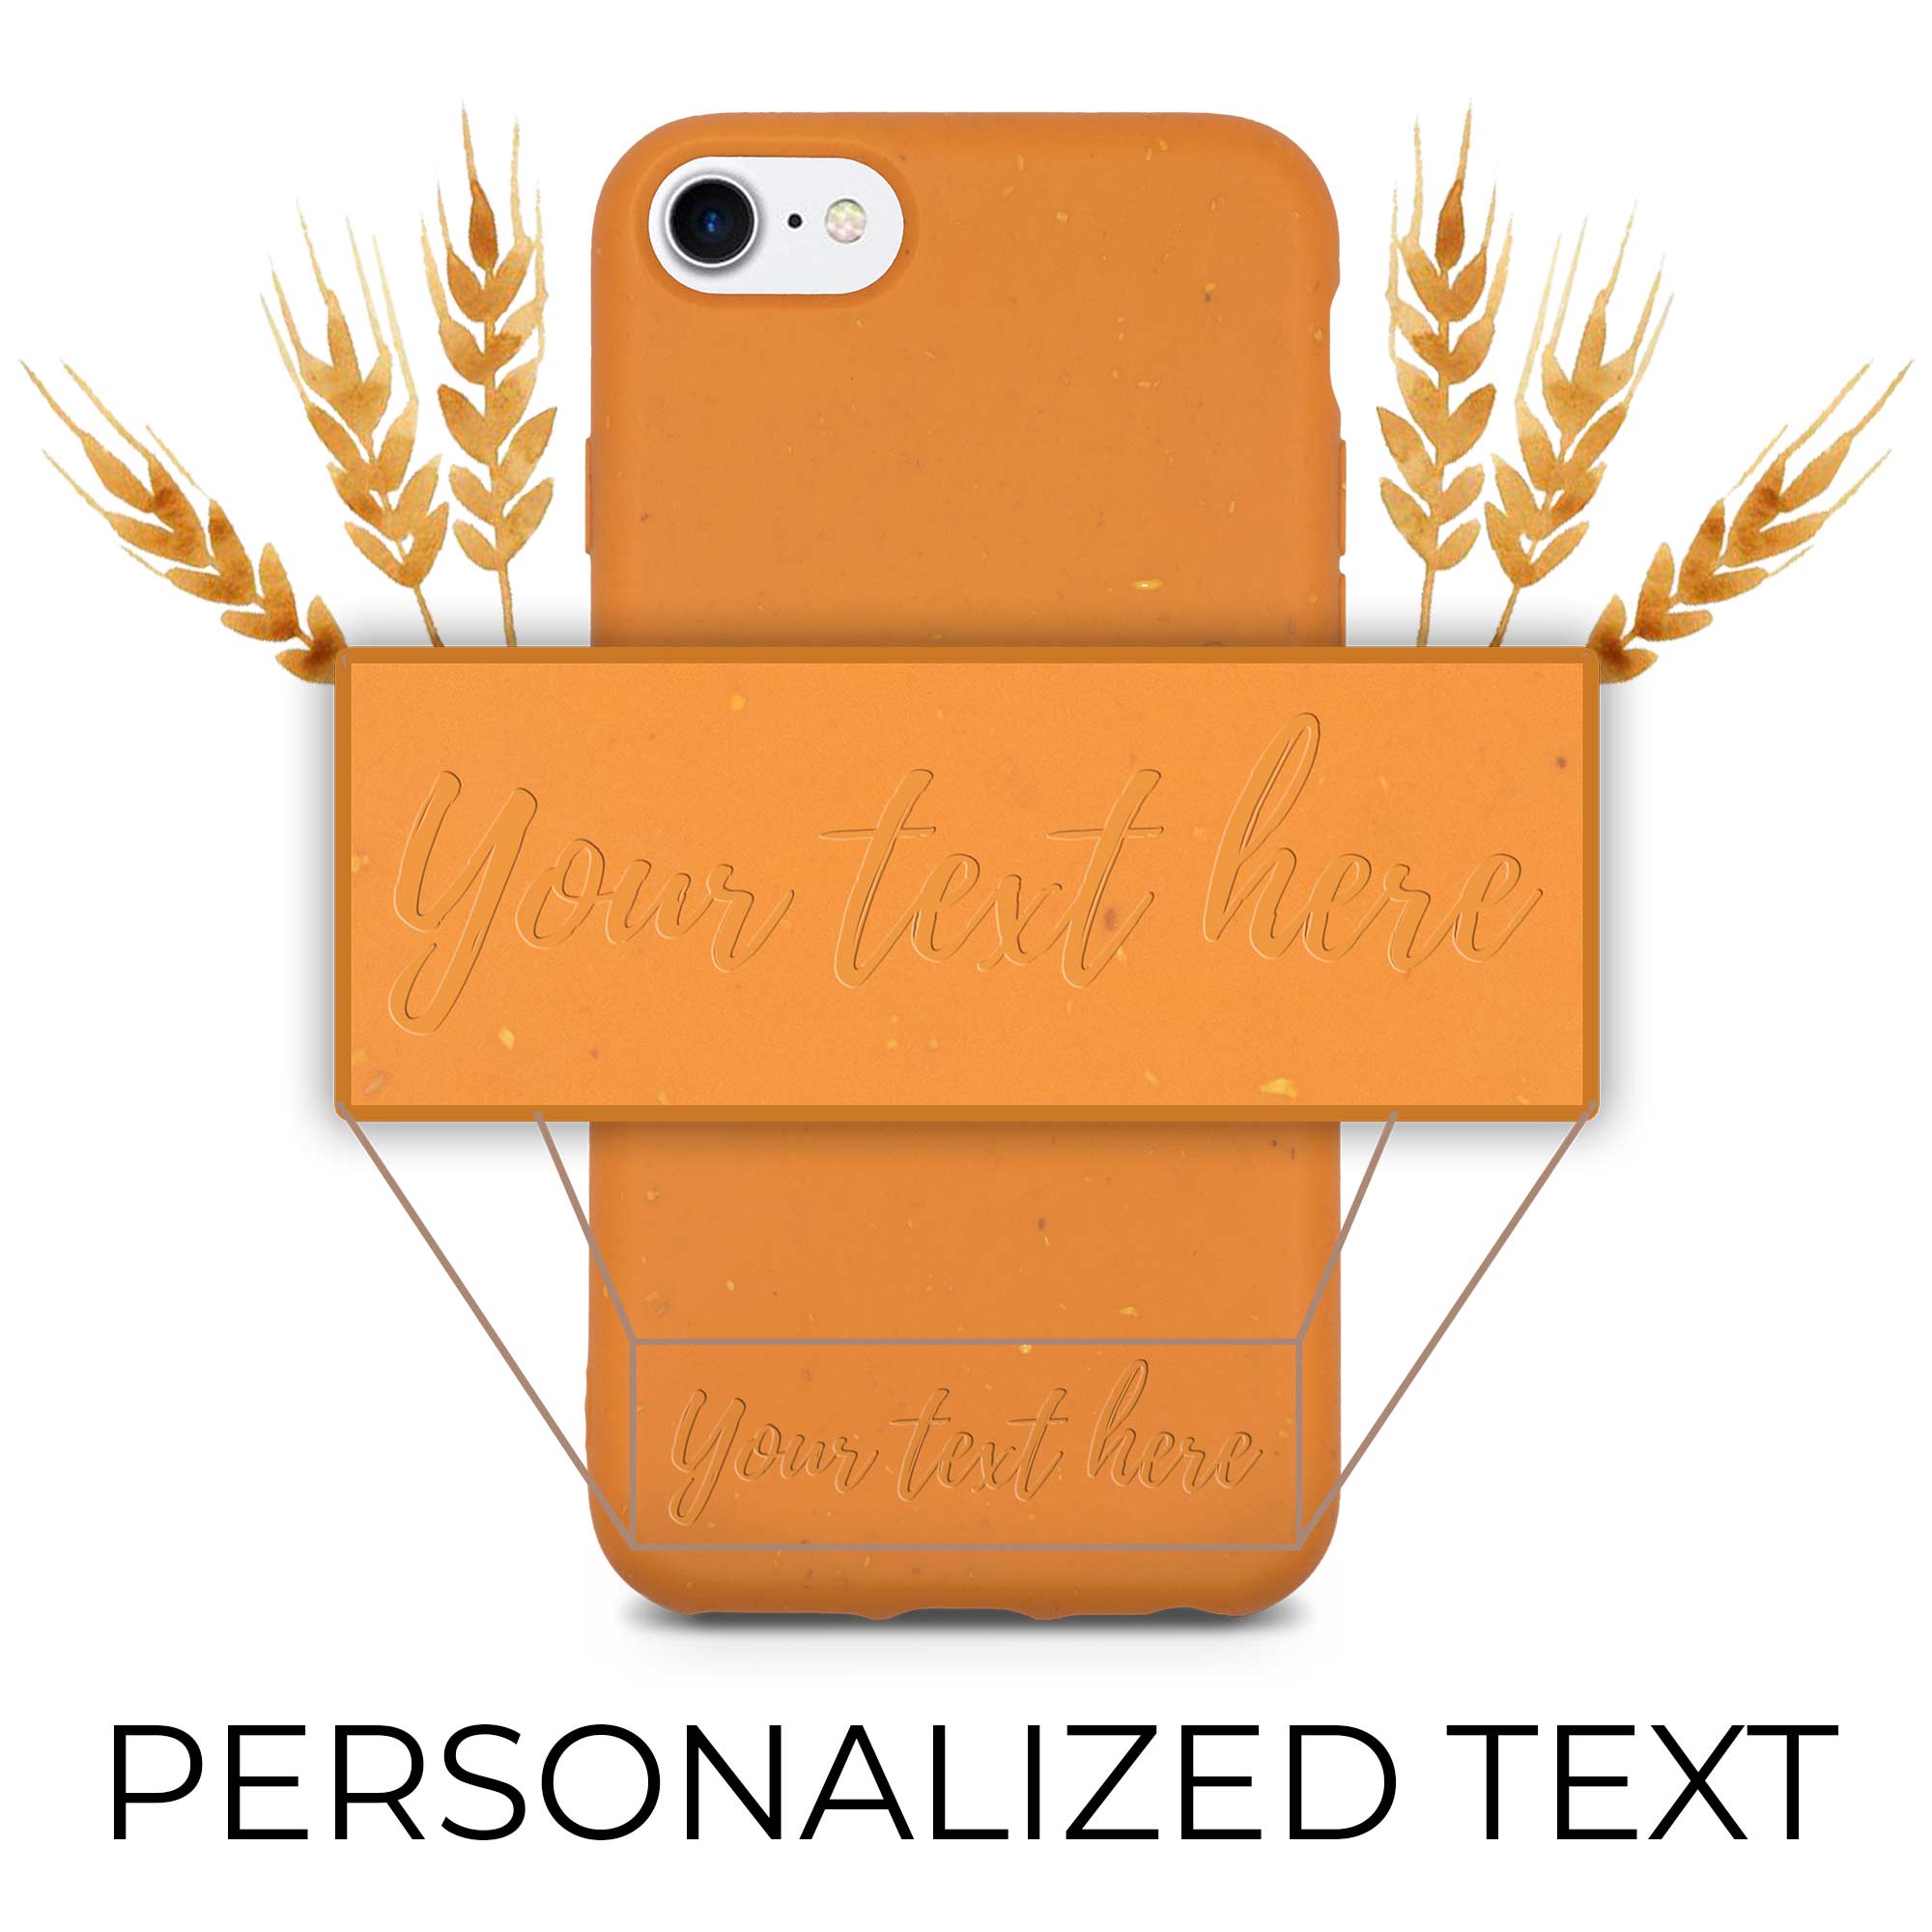 Benutzerdefinierter personalisierter Text auf biologisch abbaubarer orangefarbener iPhone-Hülle